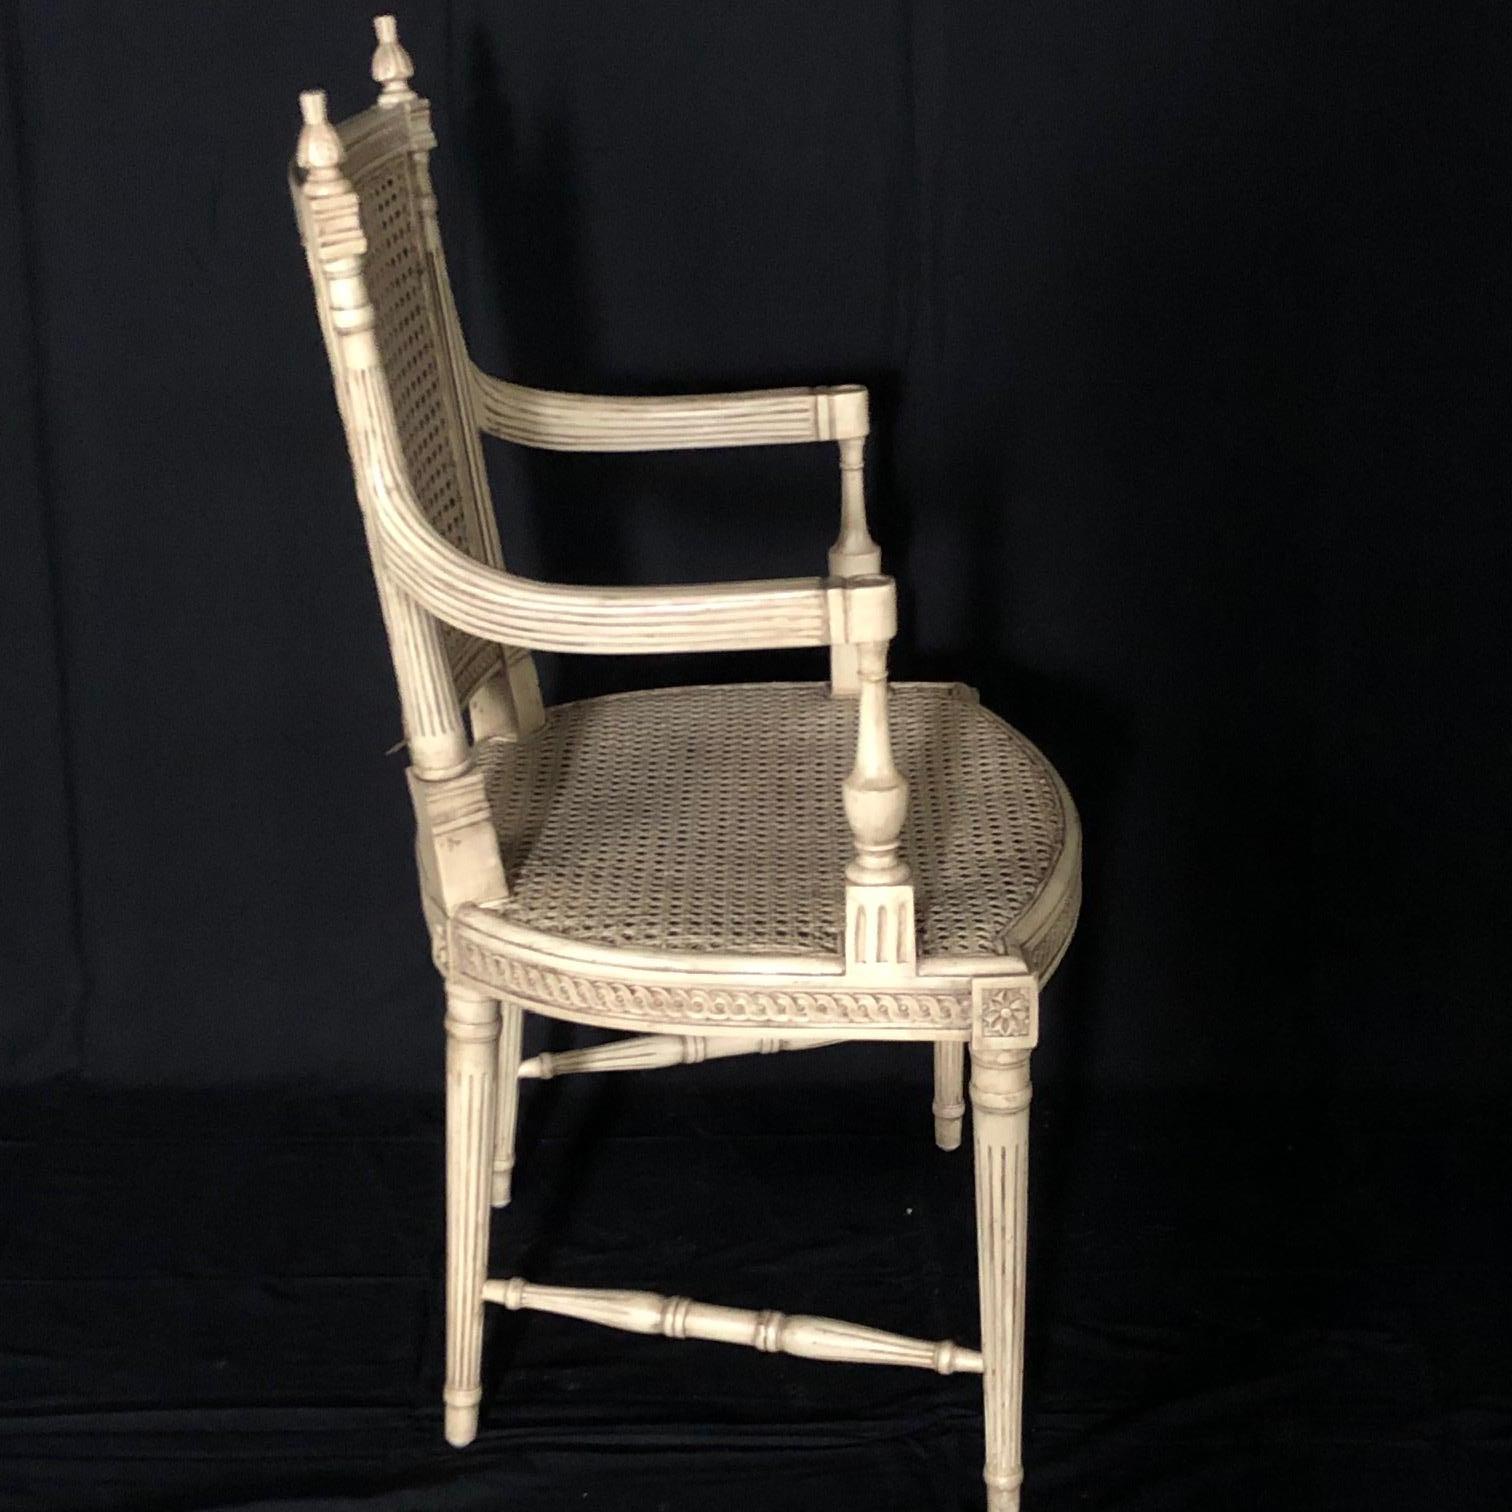 Schöner elfenbeinfarbener Sessel im Louis XVI-Stil mit doppelter Verkleidung, in sehr gutem Zustand! Die Schilfrohrbeine und die filigranen Schnitzereien an der Schürze und der Oberseite der Rückenlehnen werden durch geschnitzte Endstücke ergänzt.